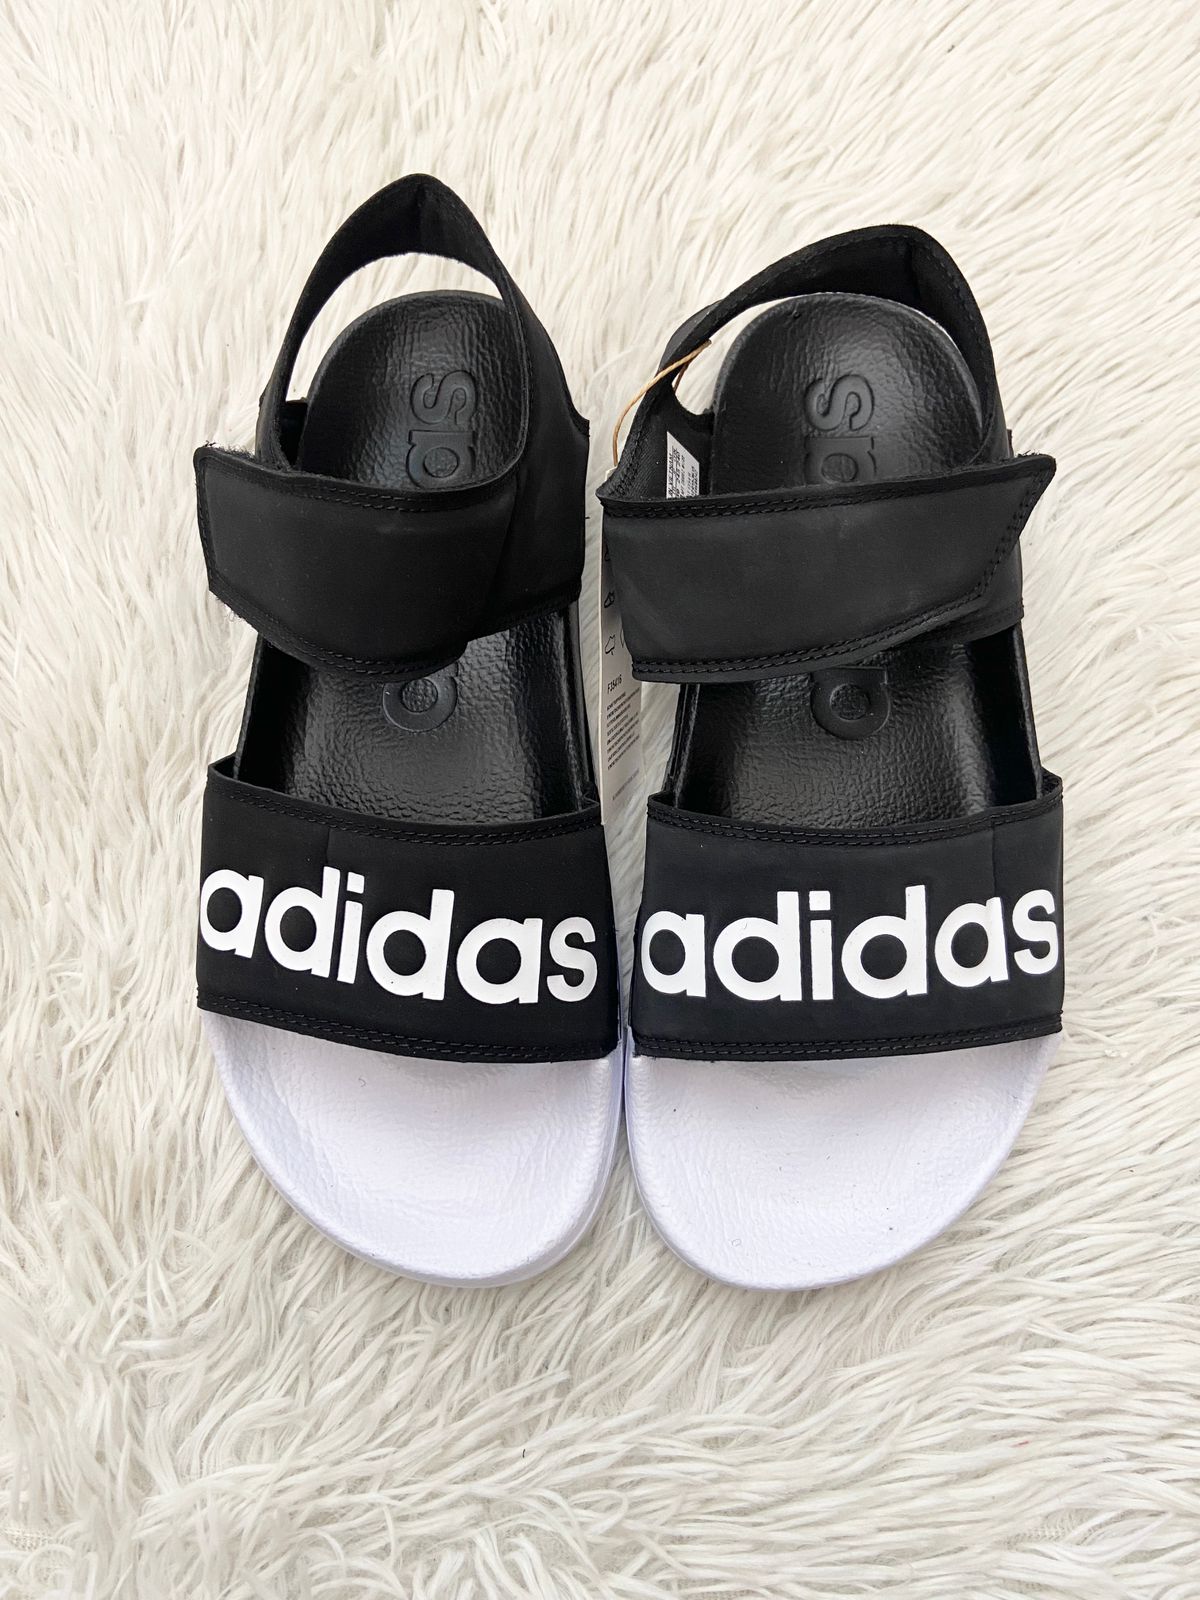 Sandalias ADIDAS ORIGINAL negra letras Adidas color blanco en el centro.